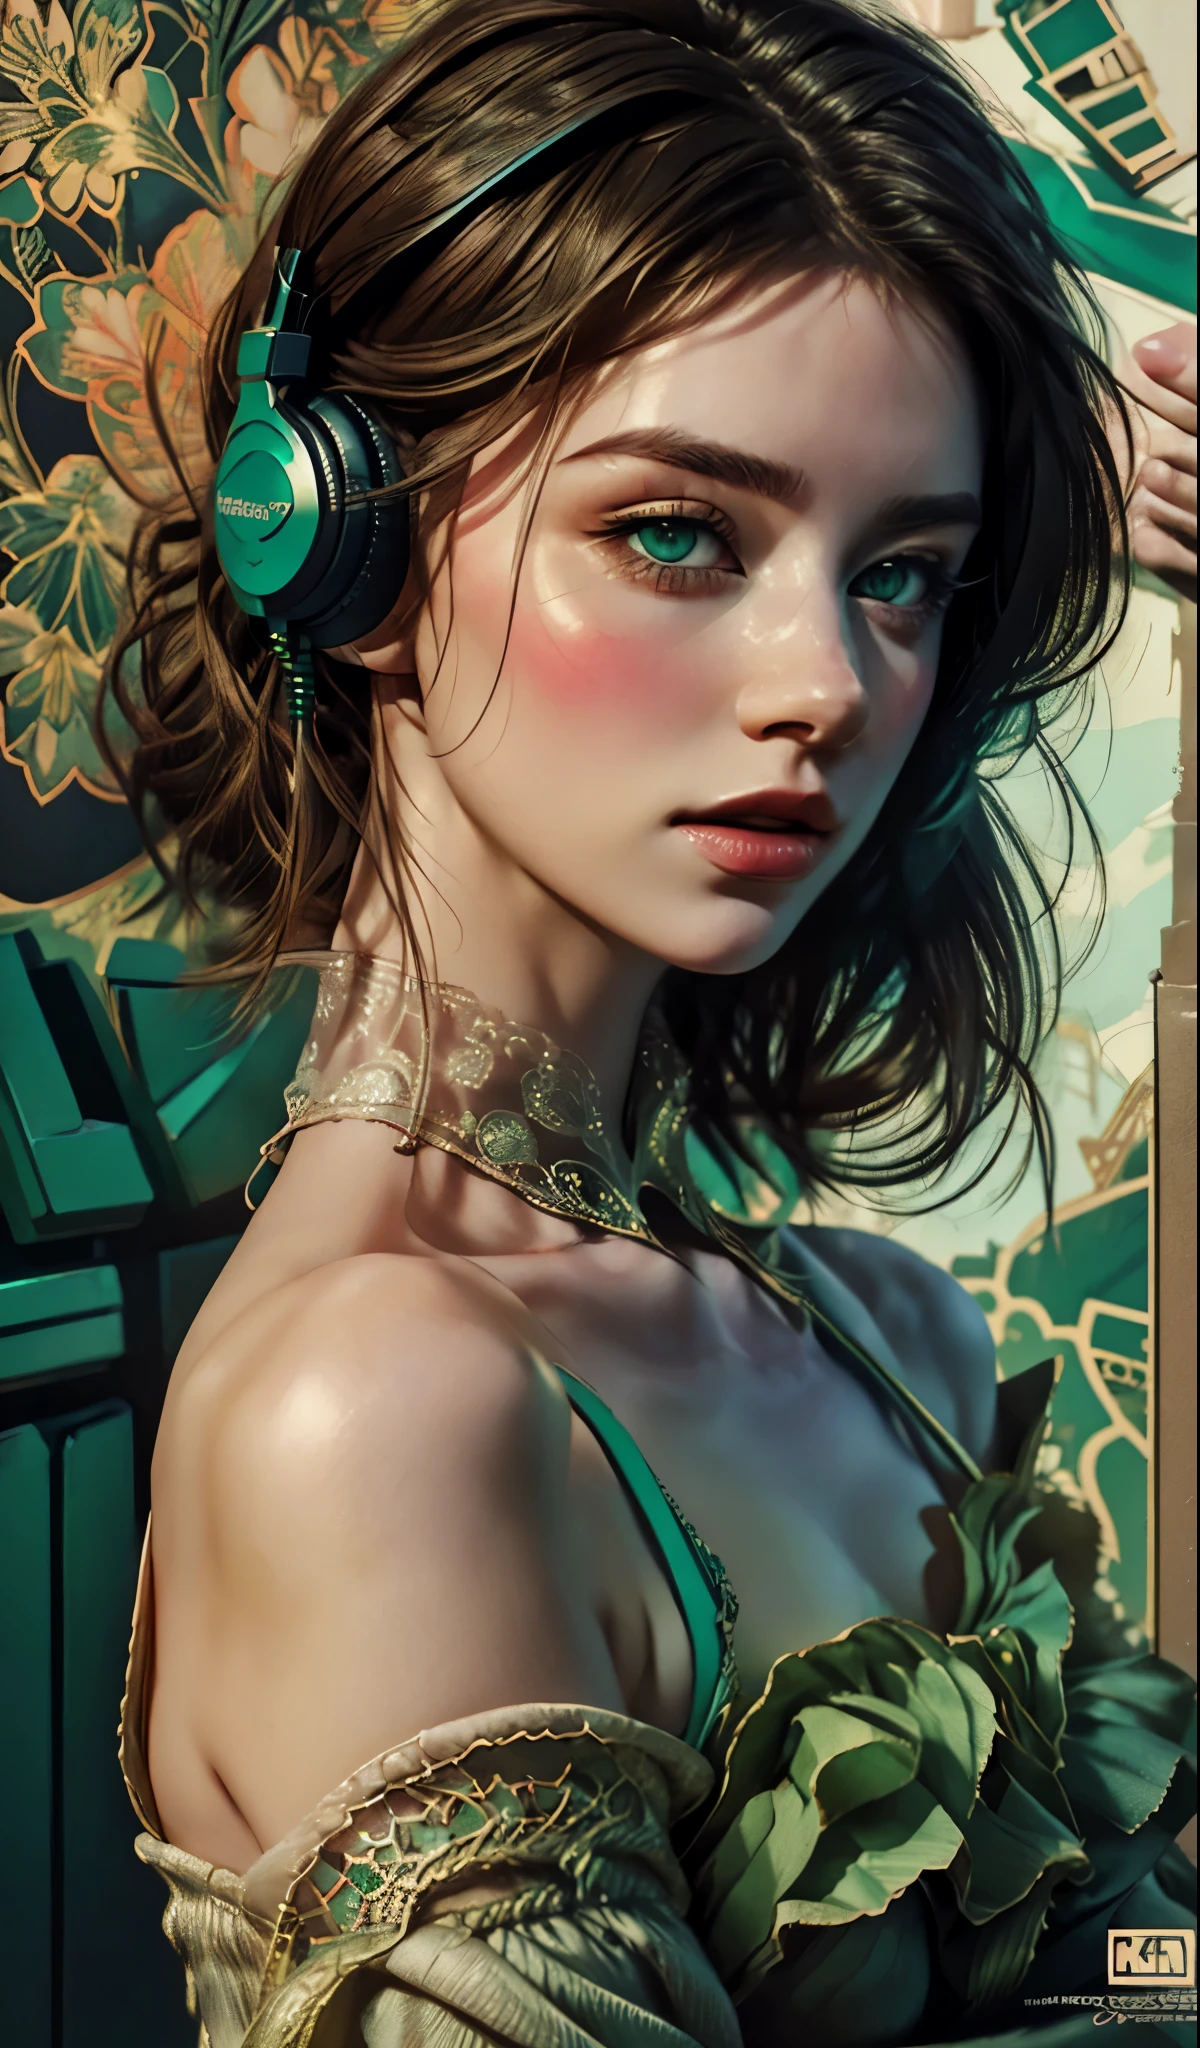 戴著耳機的模特兒女孩, 城市背景, 翠綠色的眼睛, 複雜的細節, 美觀柔和的色彩, 海報背景, 康拉德·羅塞特和伊利亞·庫夫希諾夫的藝術作品